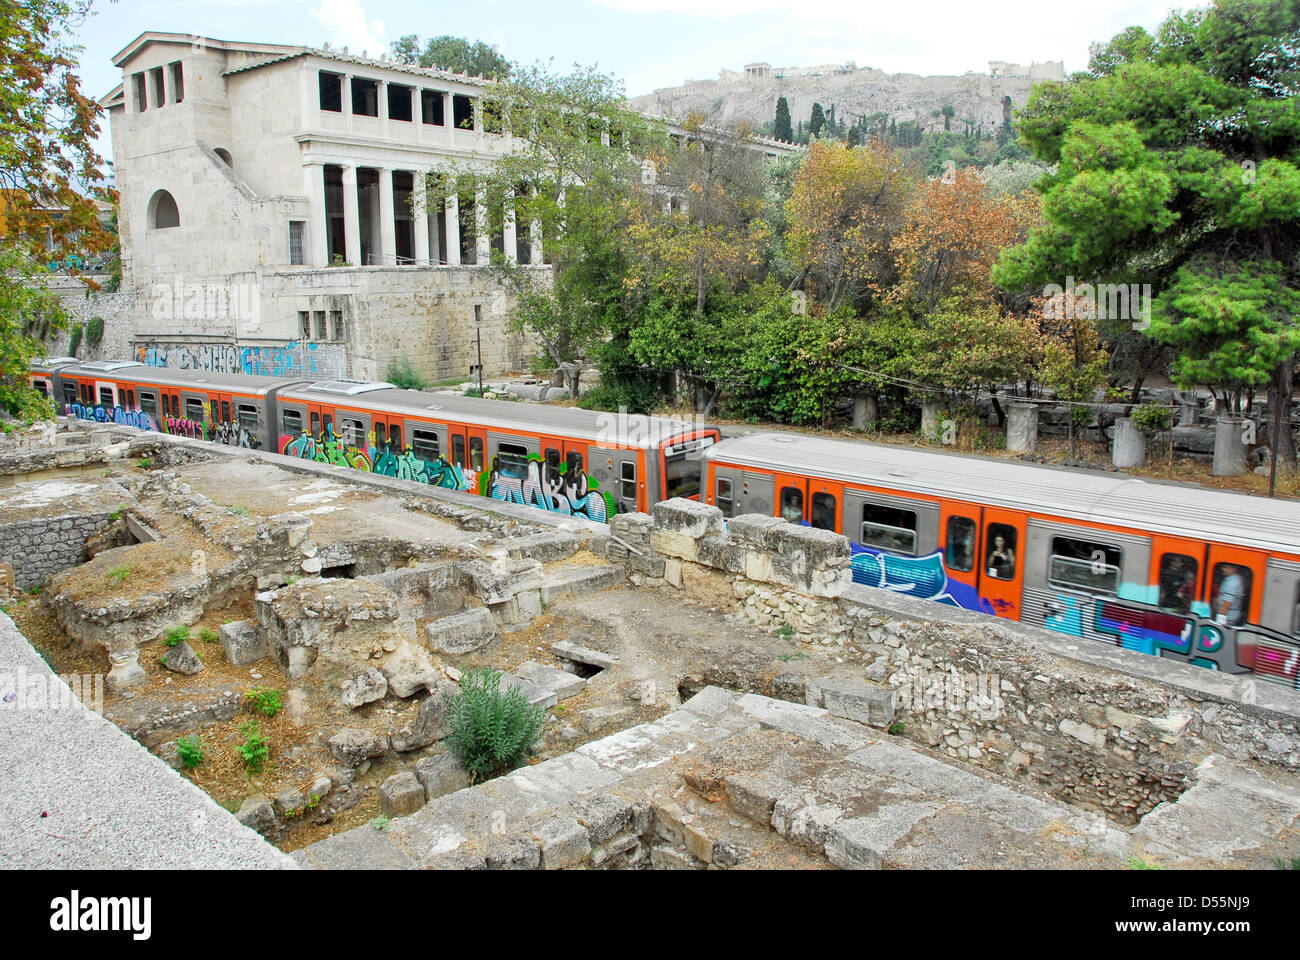 Treni pendolari withngraffiti andando dalla Stoa nell'antica piazza del mercato di Agorà di Atene, Grecia Foto Stock